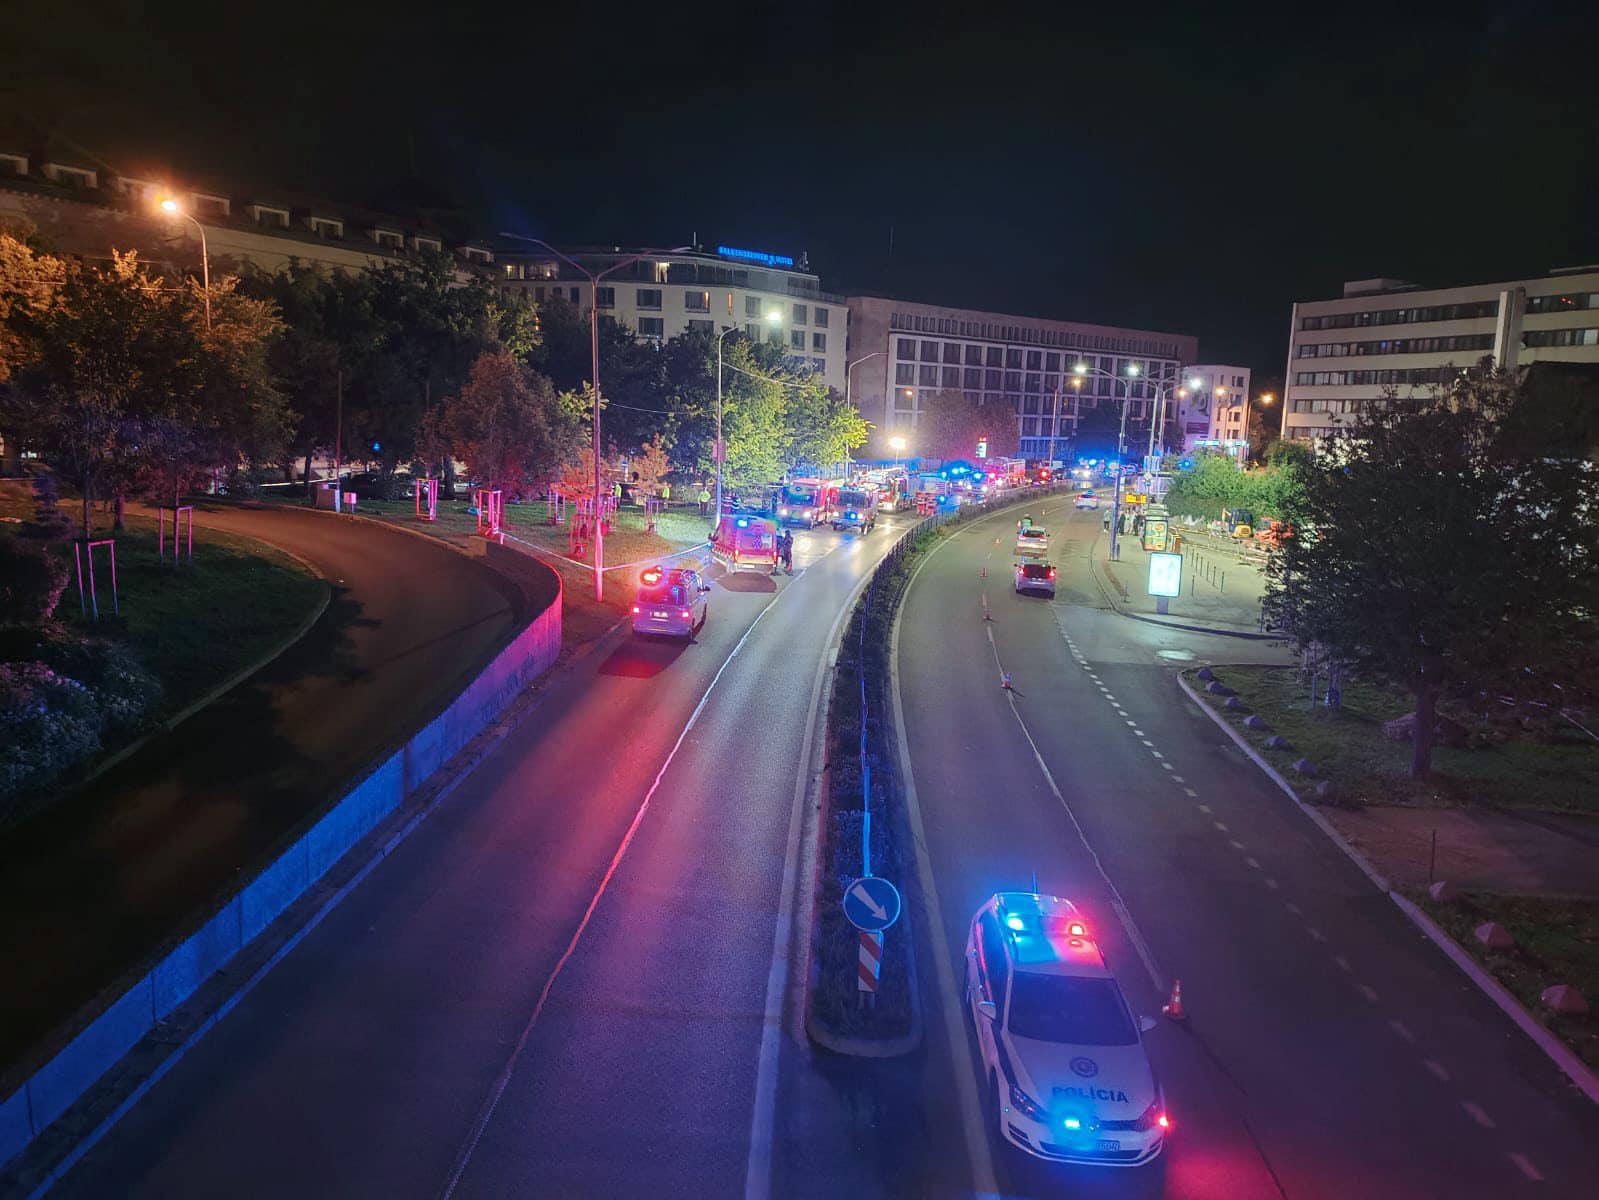 Tragédia v Bratislave: Opitý vodič vrazil do zastávky plnej ľudí. Po nehode sa k policajtom k policajtom správal agresívne